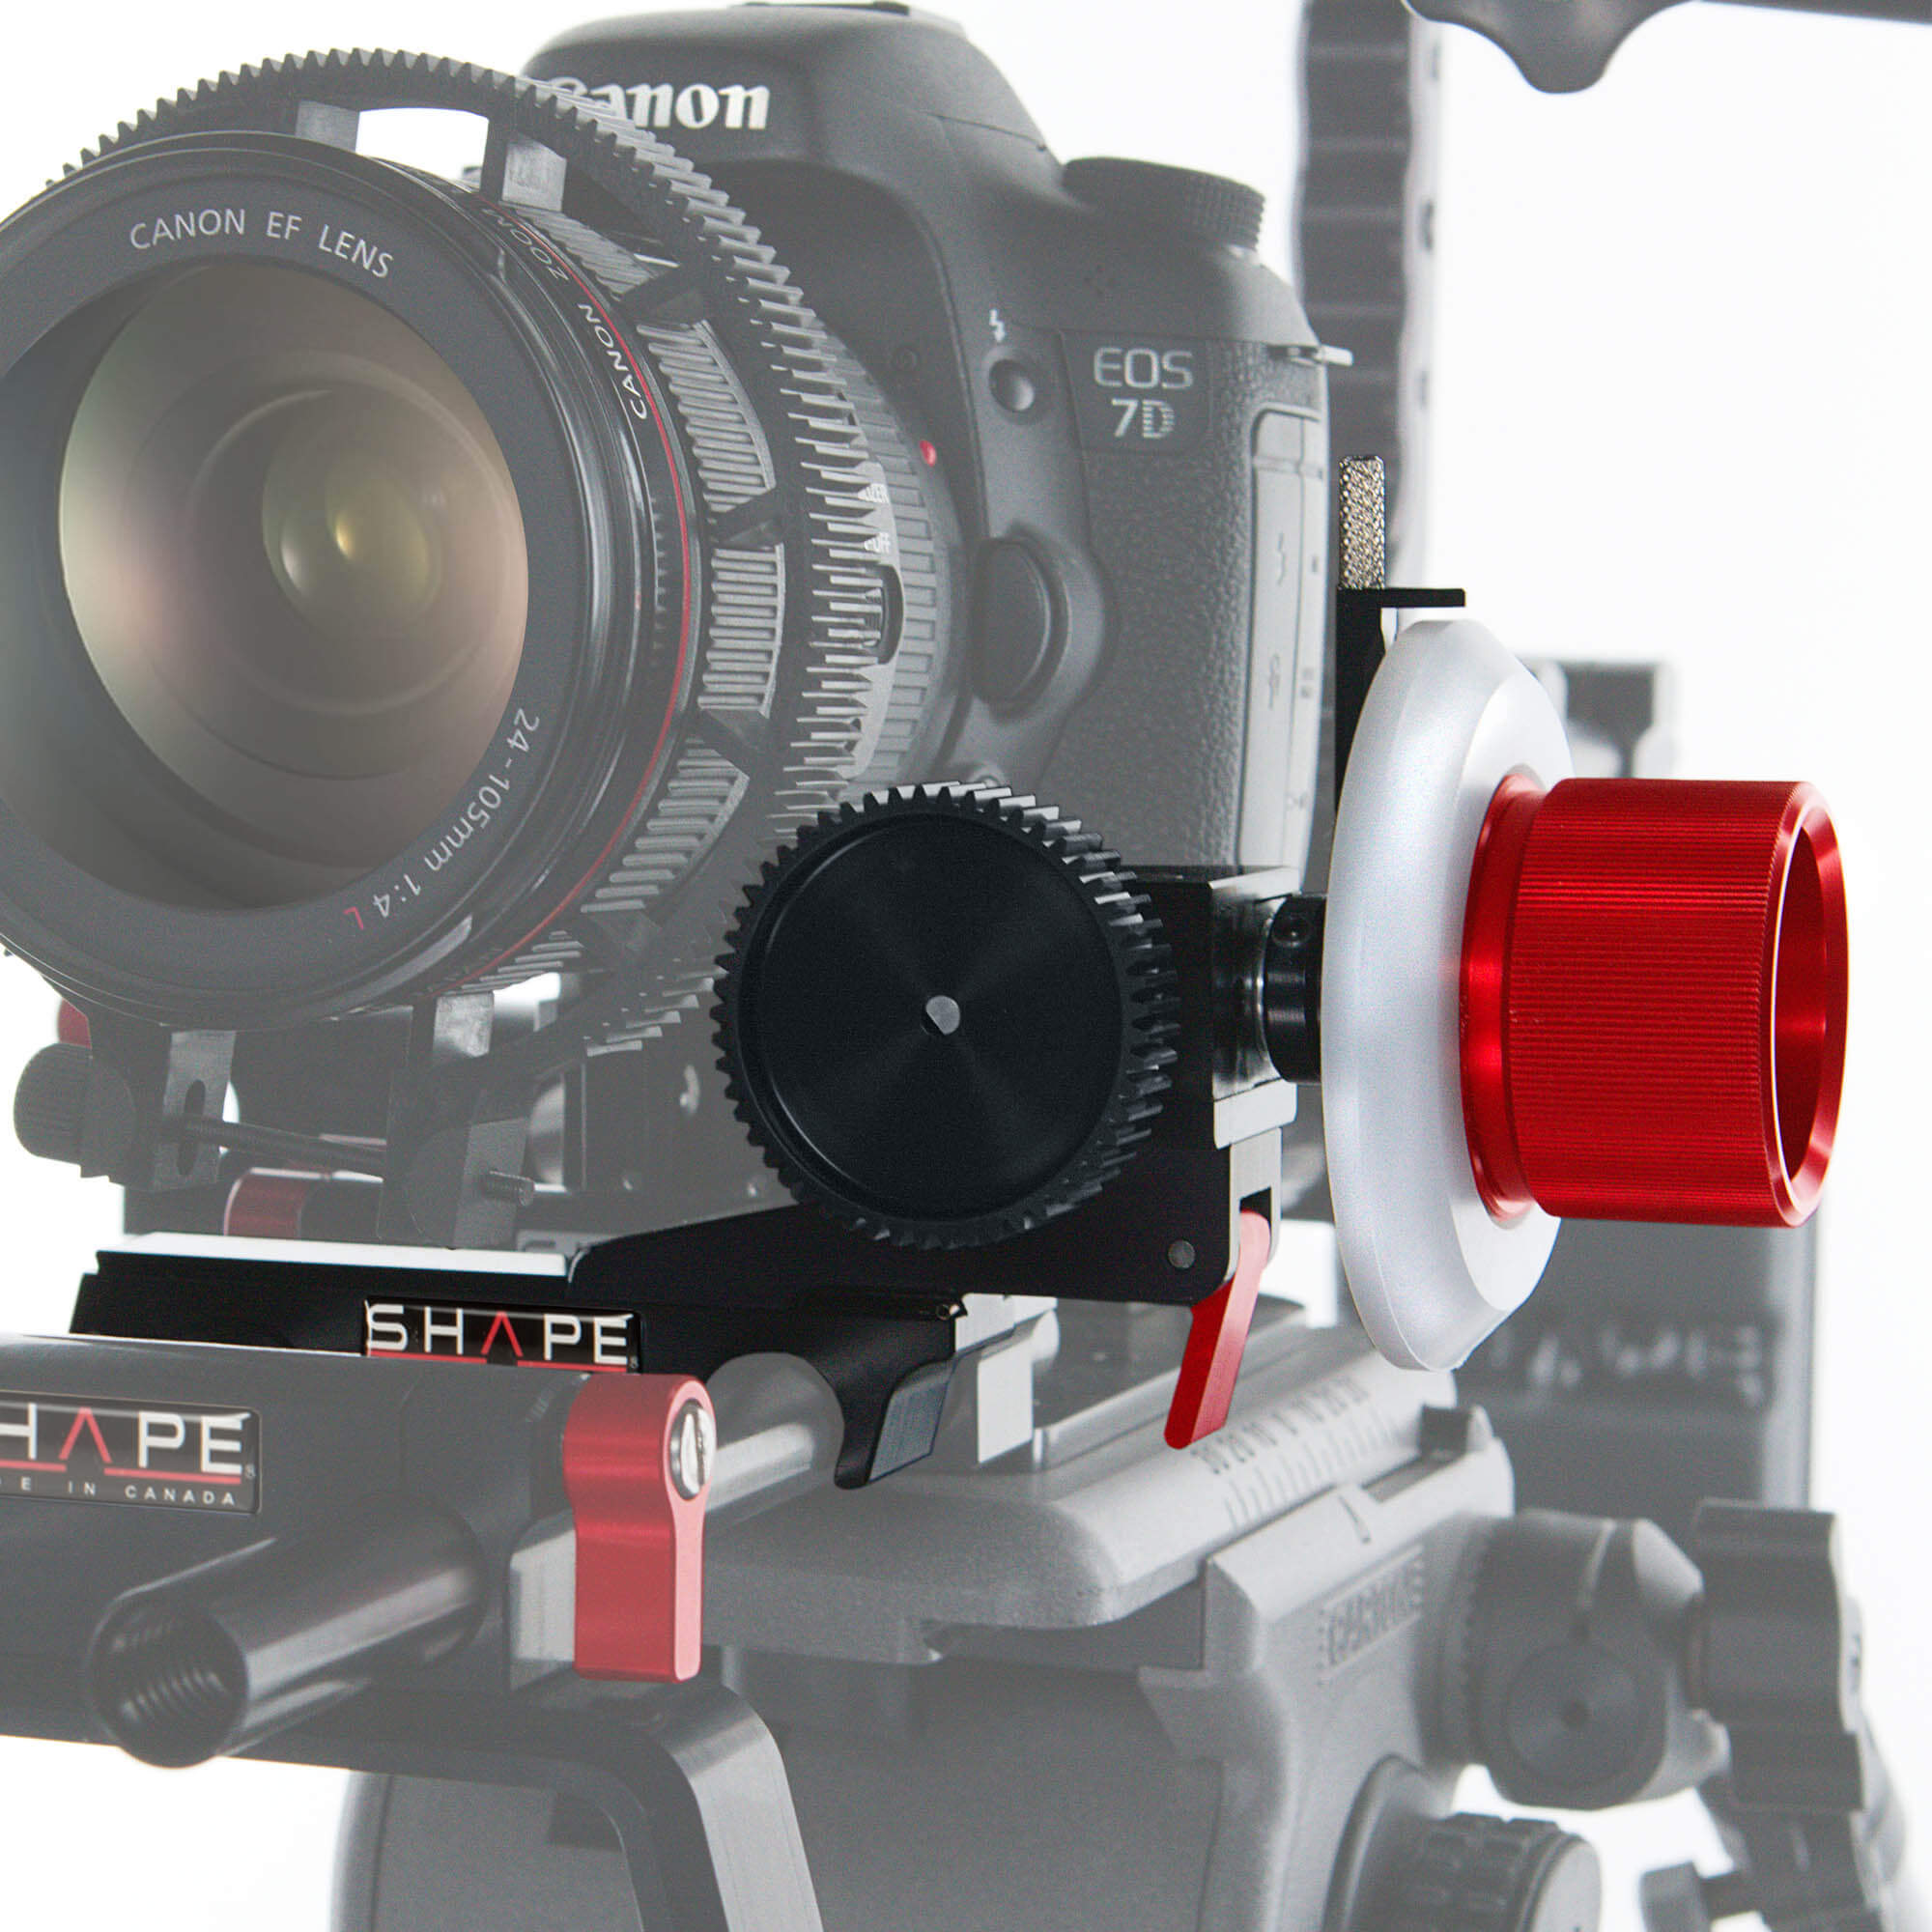 Kit de montage d'épaule SHAPE pour Sony A7R III